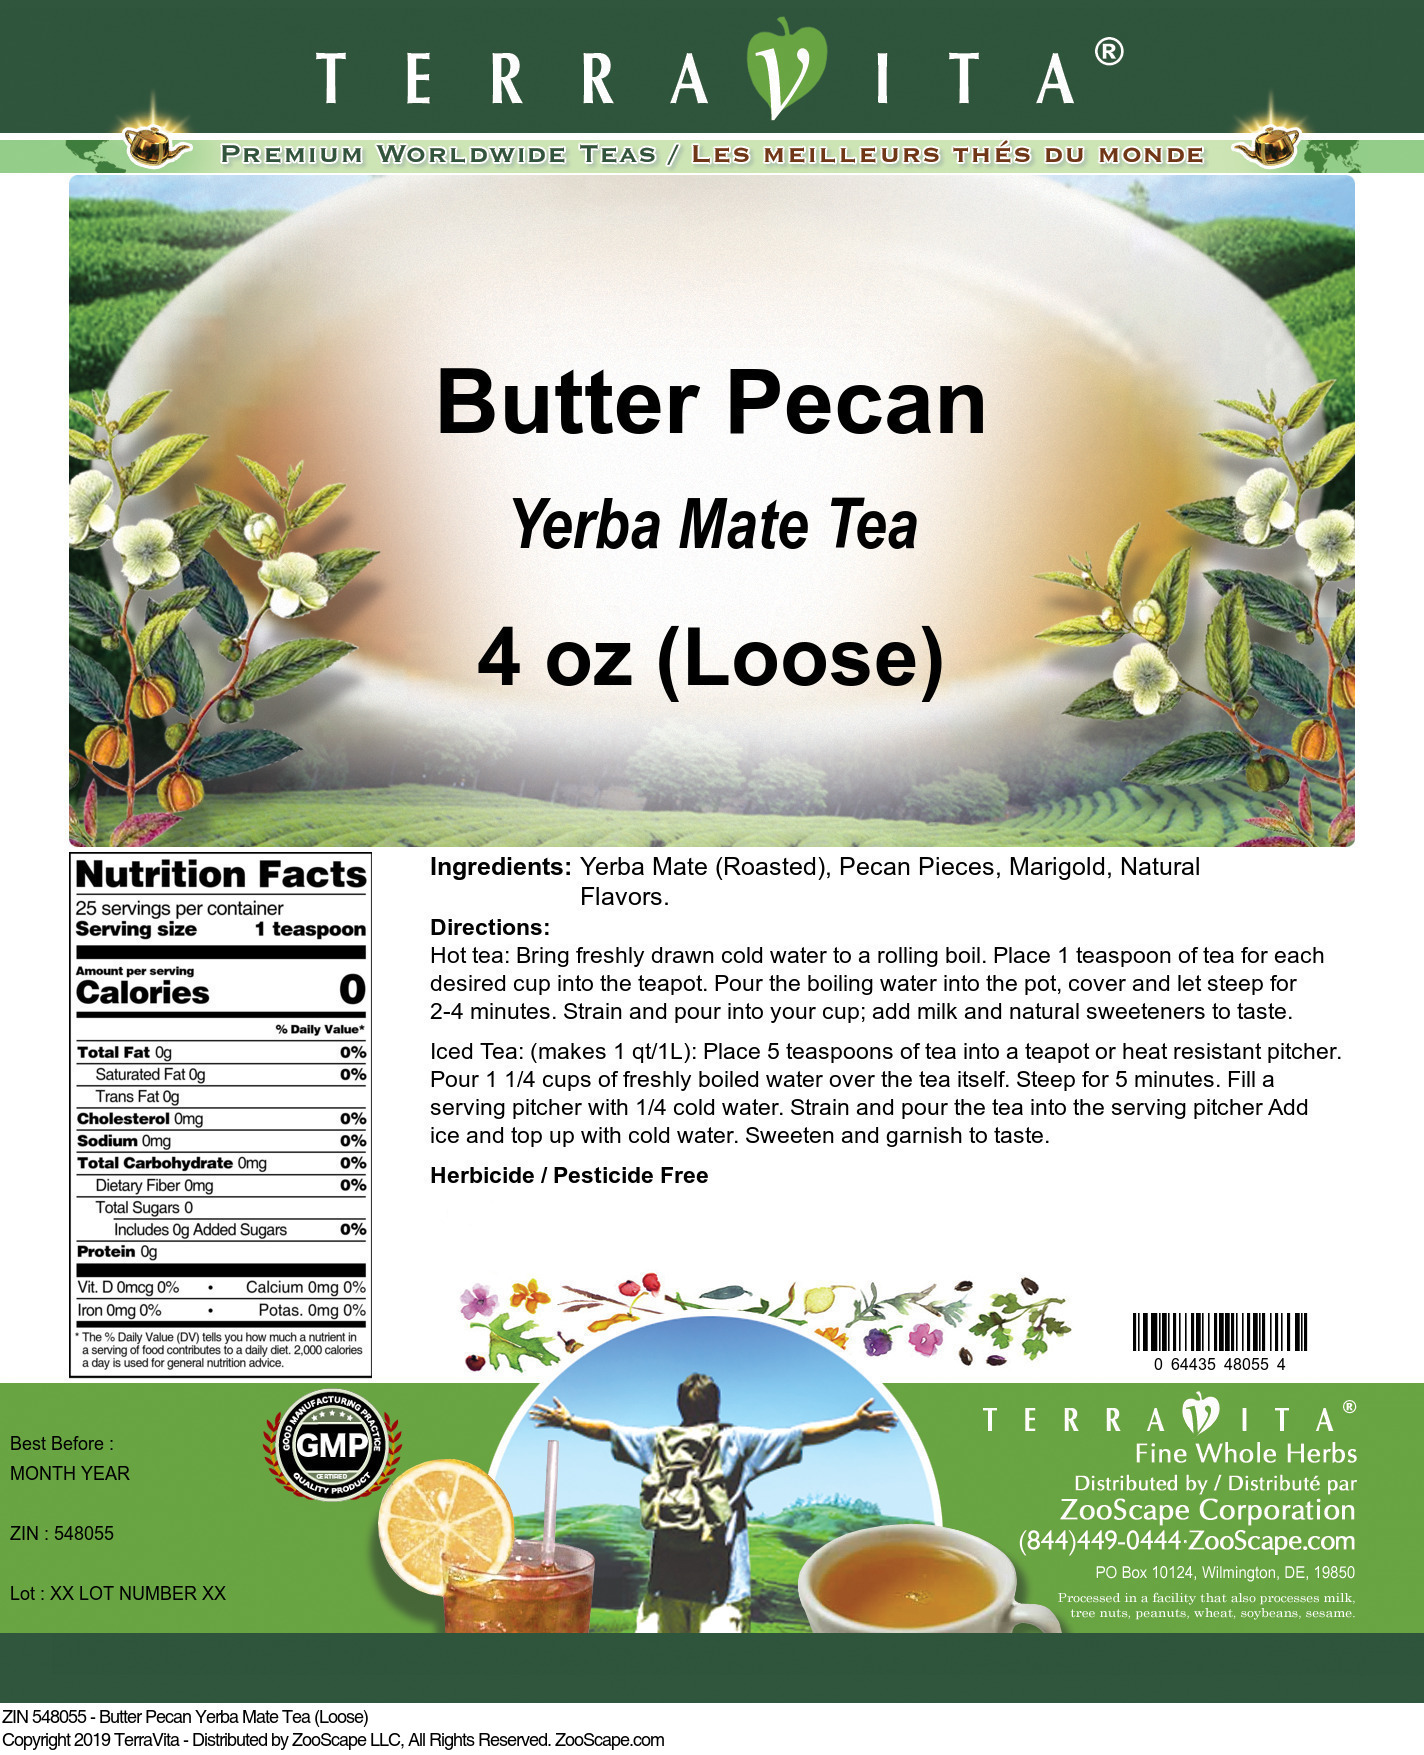 Butter Pecan Yerba Mate Tea (Loose) - Label